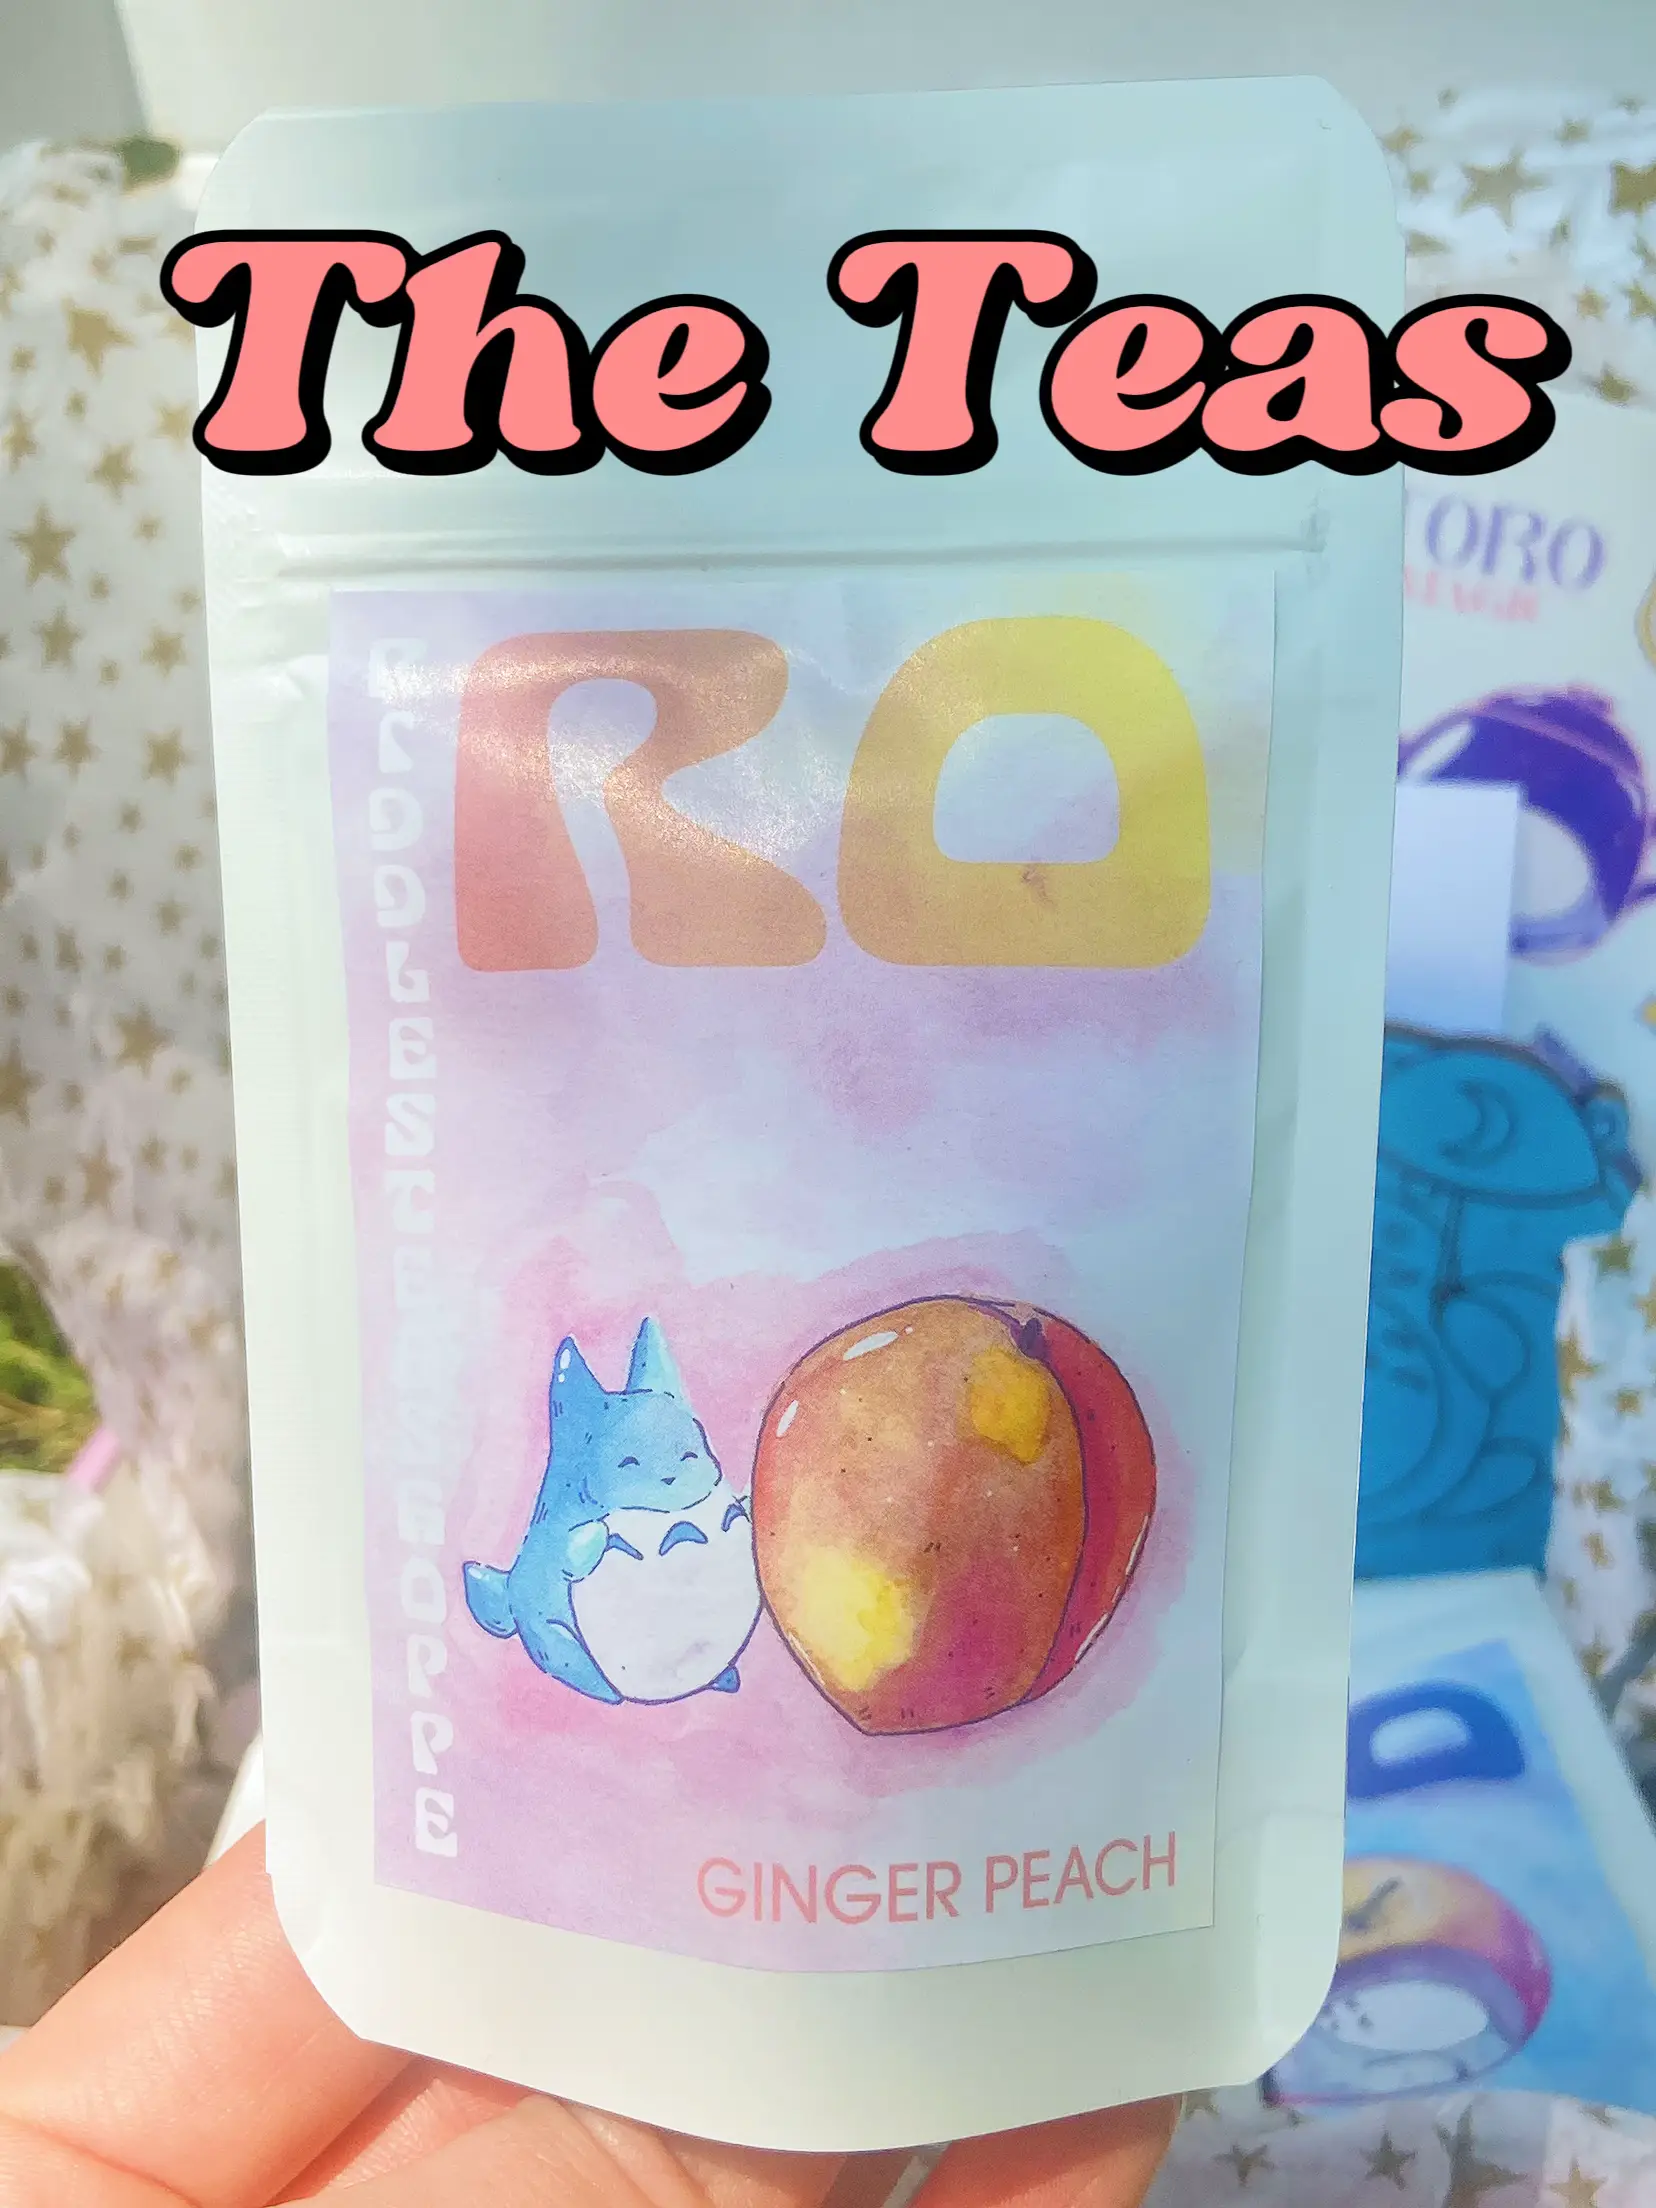 Peach Black Anime Tea - Cheeby Tea